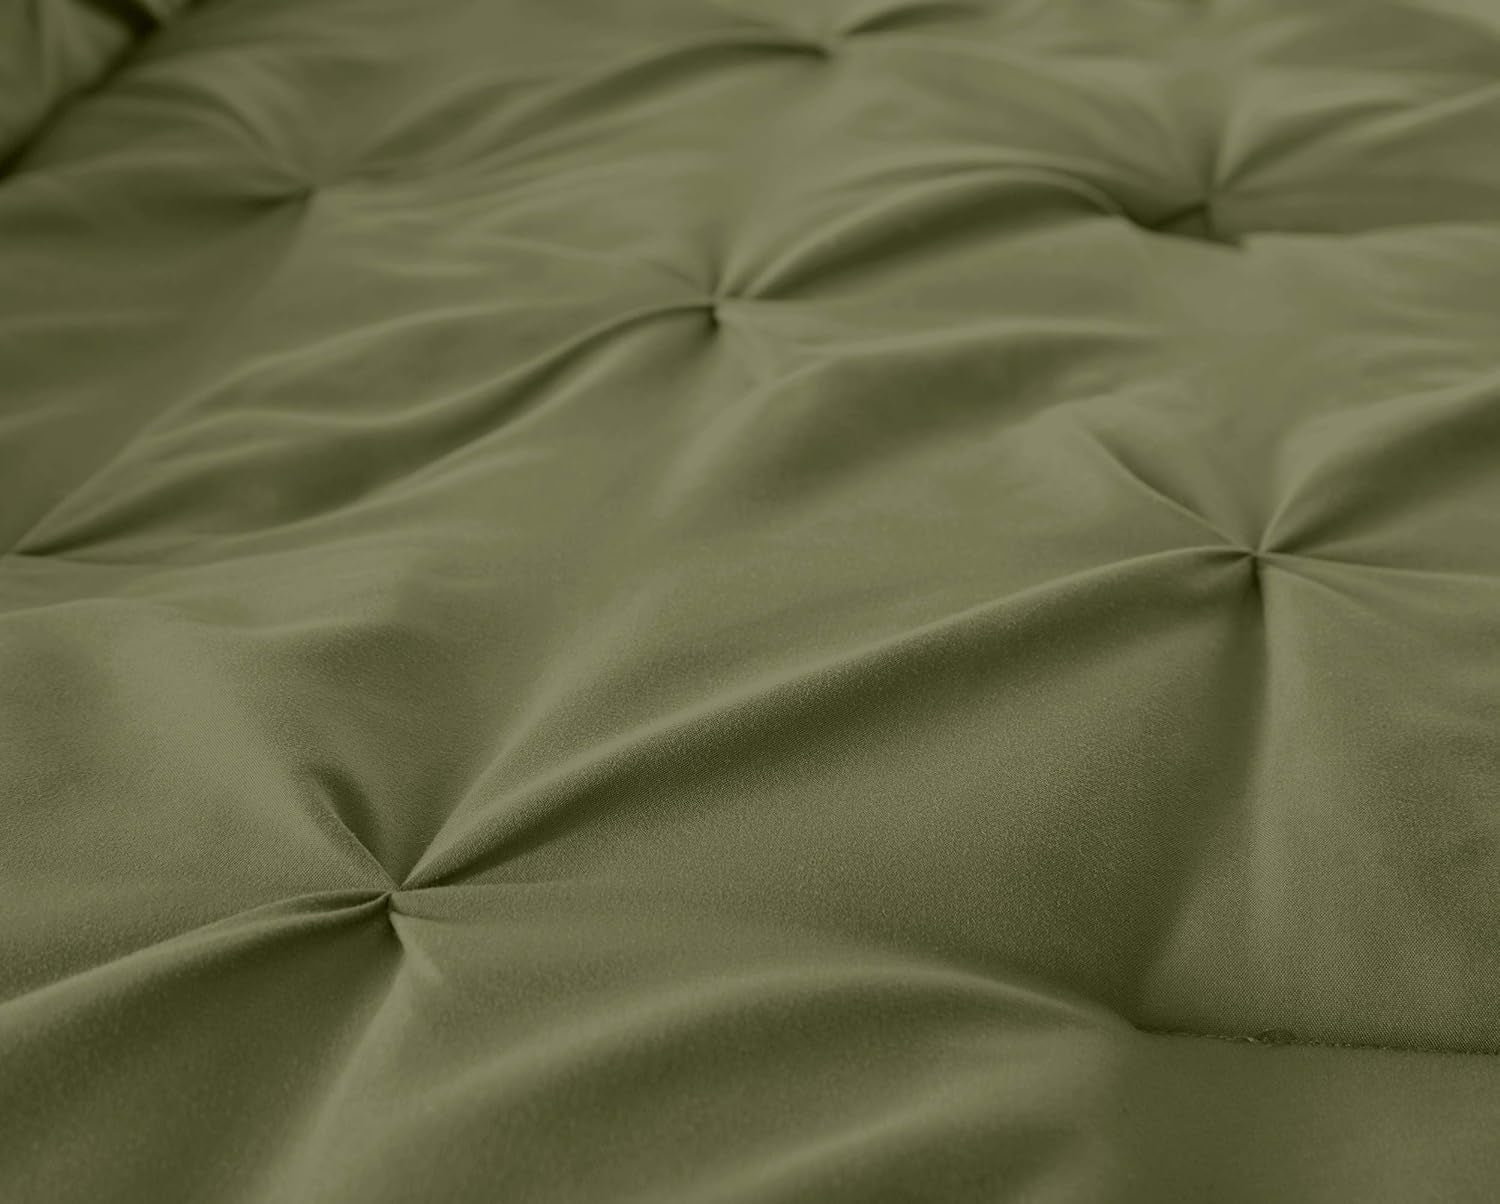 Berlin Olive Green Pinch Pleat Full Comforter Set 3-Piece (1 Comforter and 2 Pillow Shams) Soft Pintuck Lightweight All Season Microfiber Comforter Bedding Set